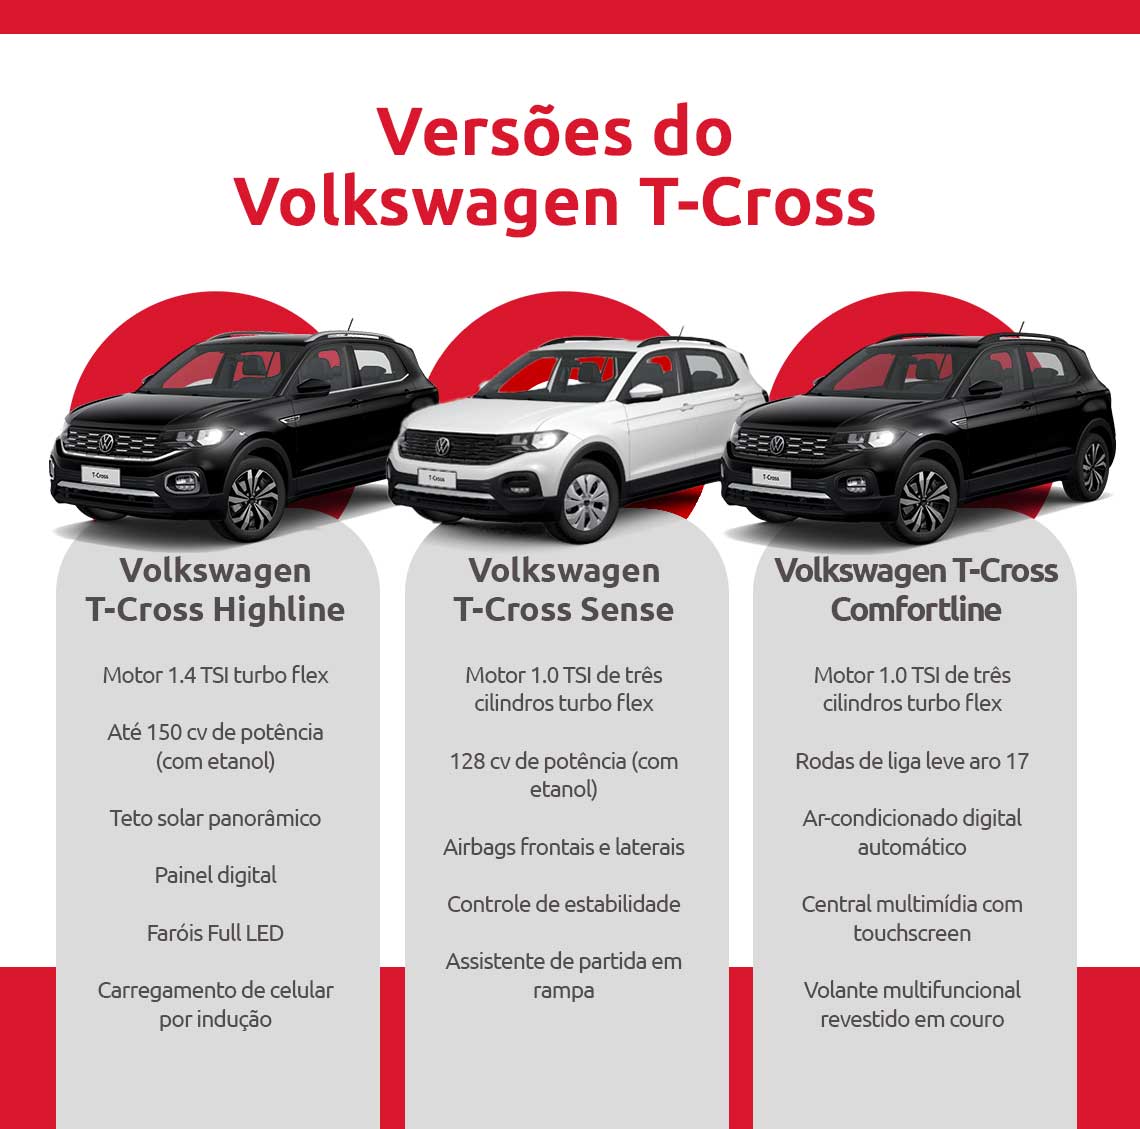 Infográfico sobre versões do Volkswagen T-Cross | DOK